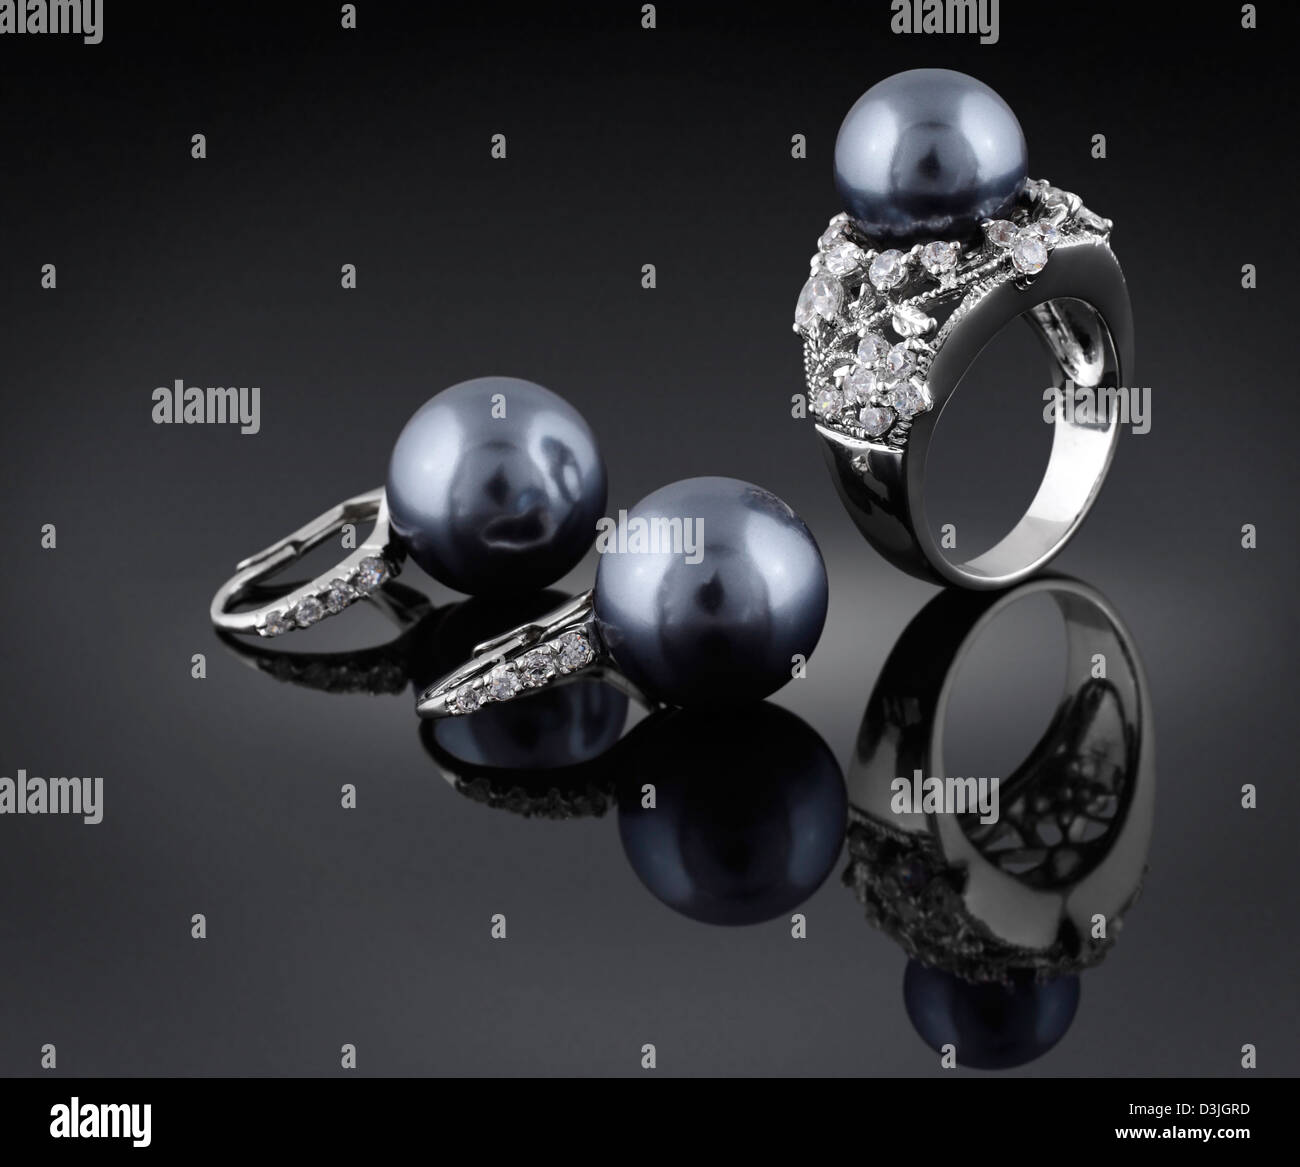 La perla negra fotografías e imágenes de alta resolución - Alamy